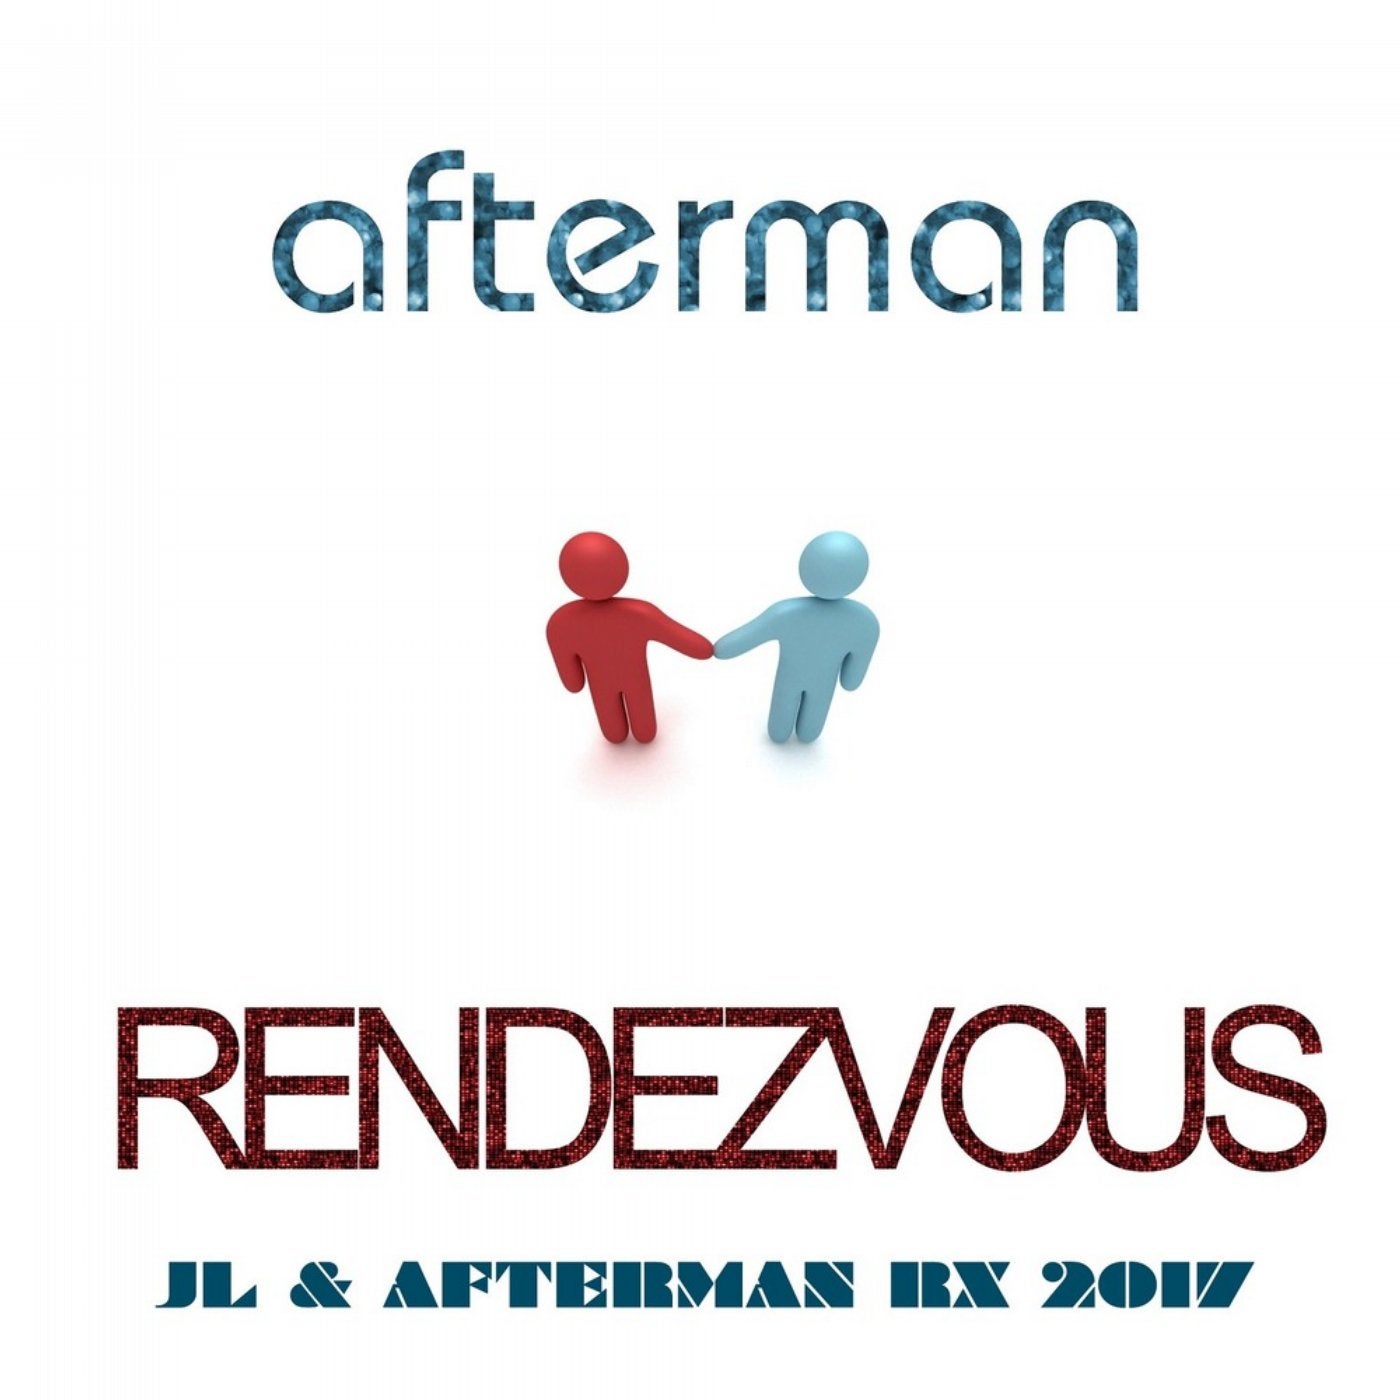 Rendezvous (Jl & Afterman Rx 2017)